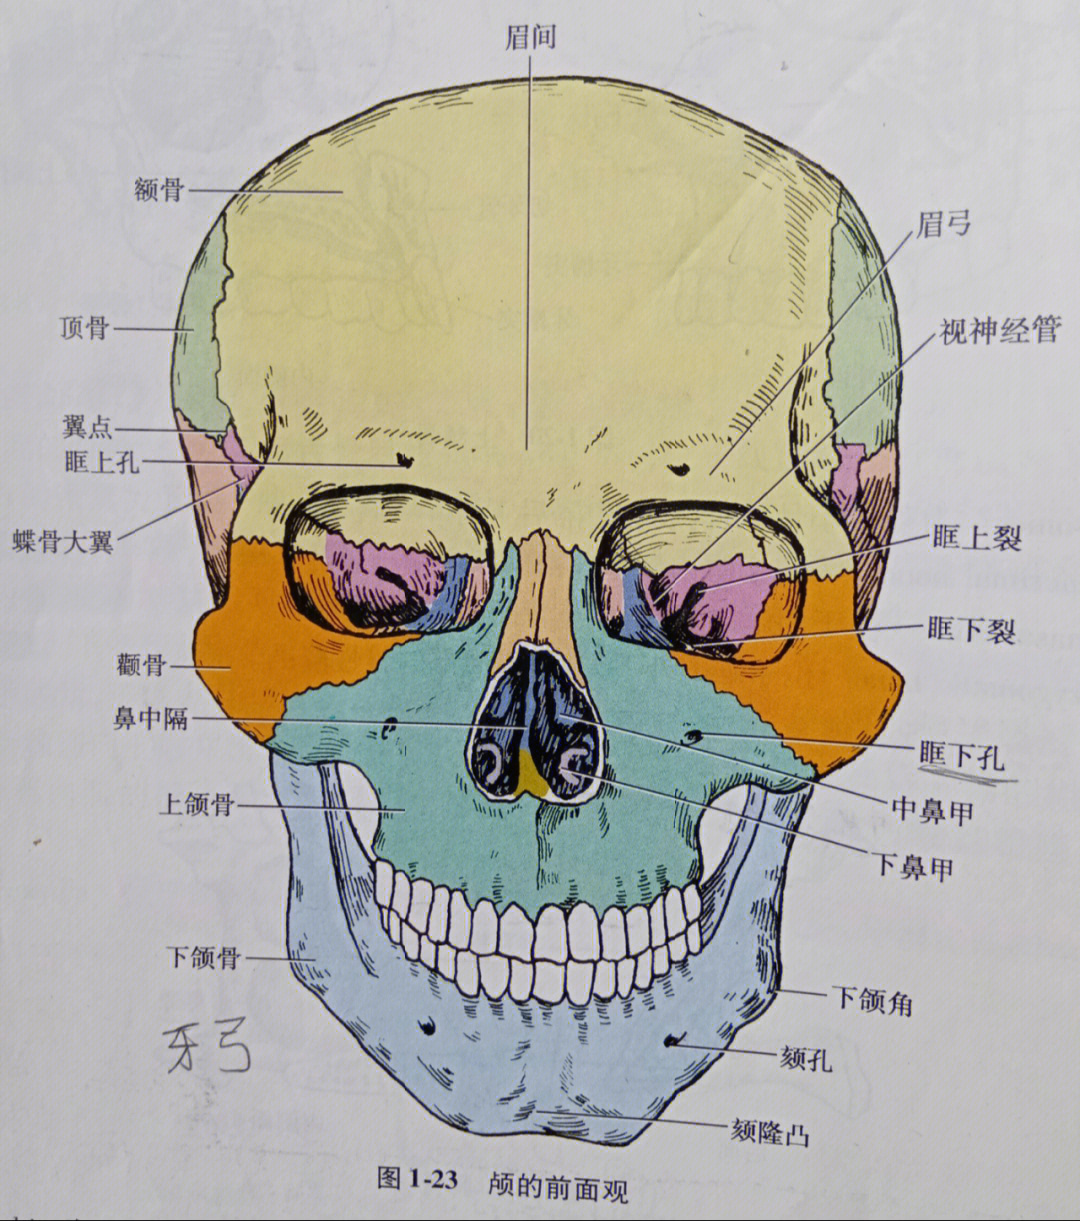 颅骨矢状面解剖图图片